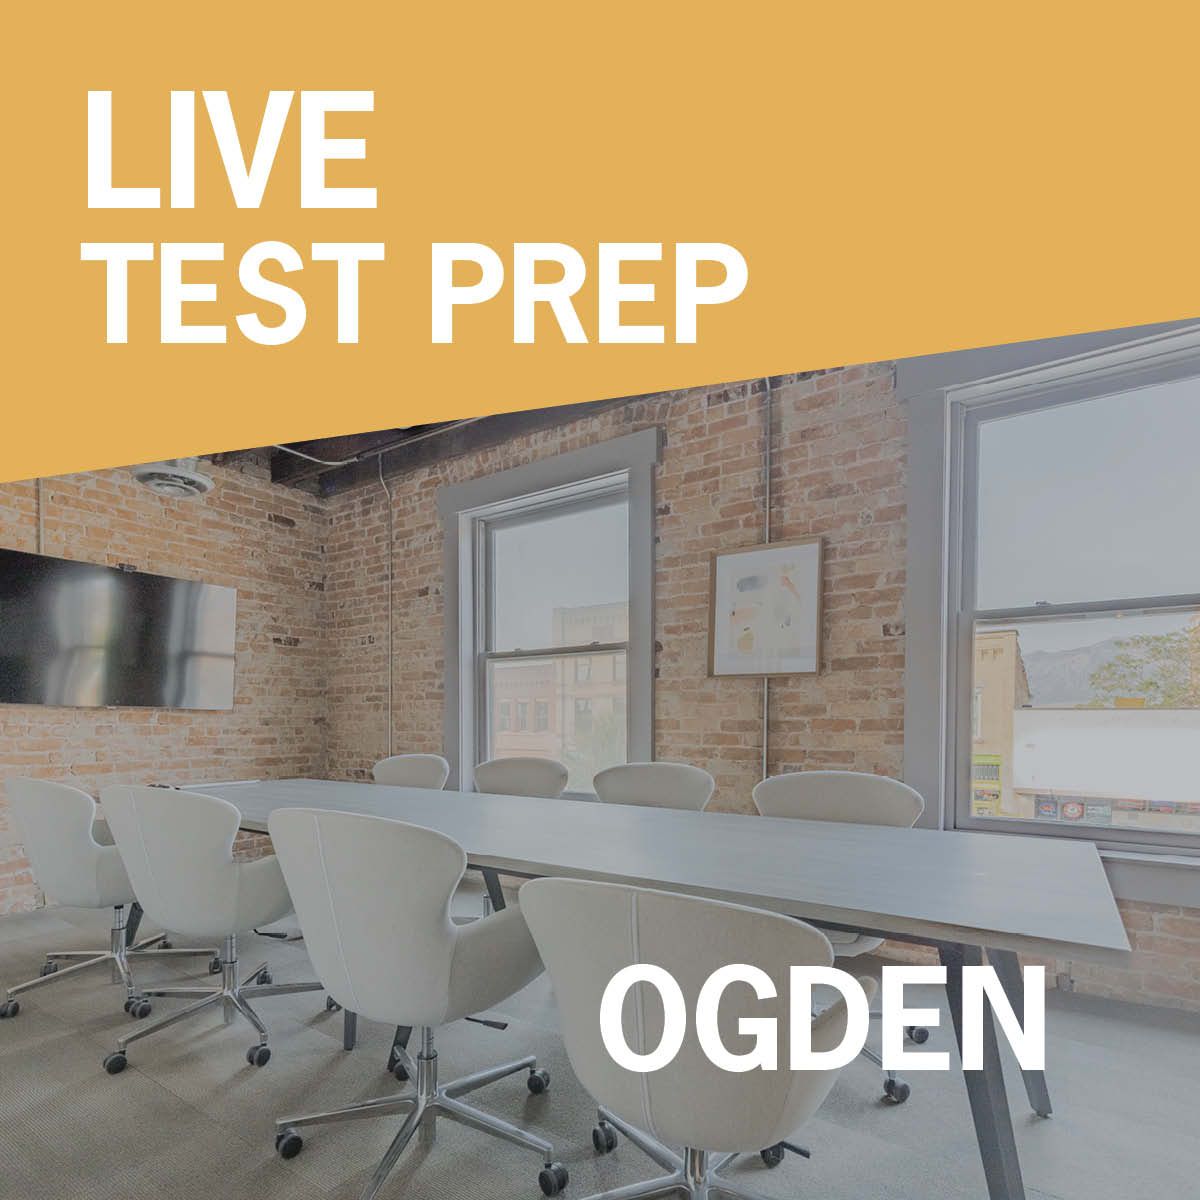 Real estate live test prep in Ogden, Utah